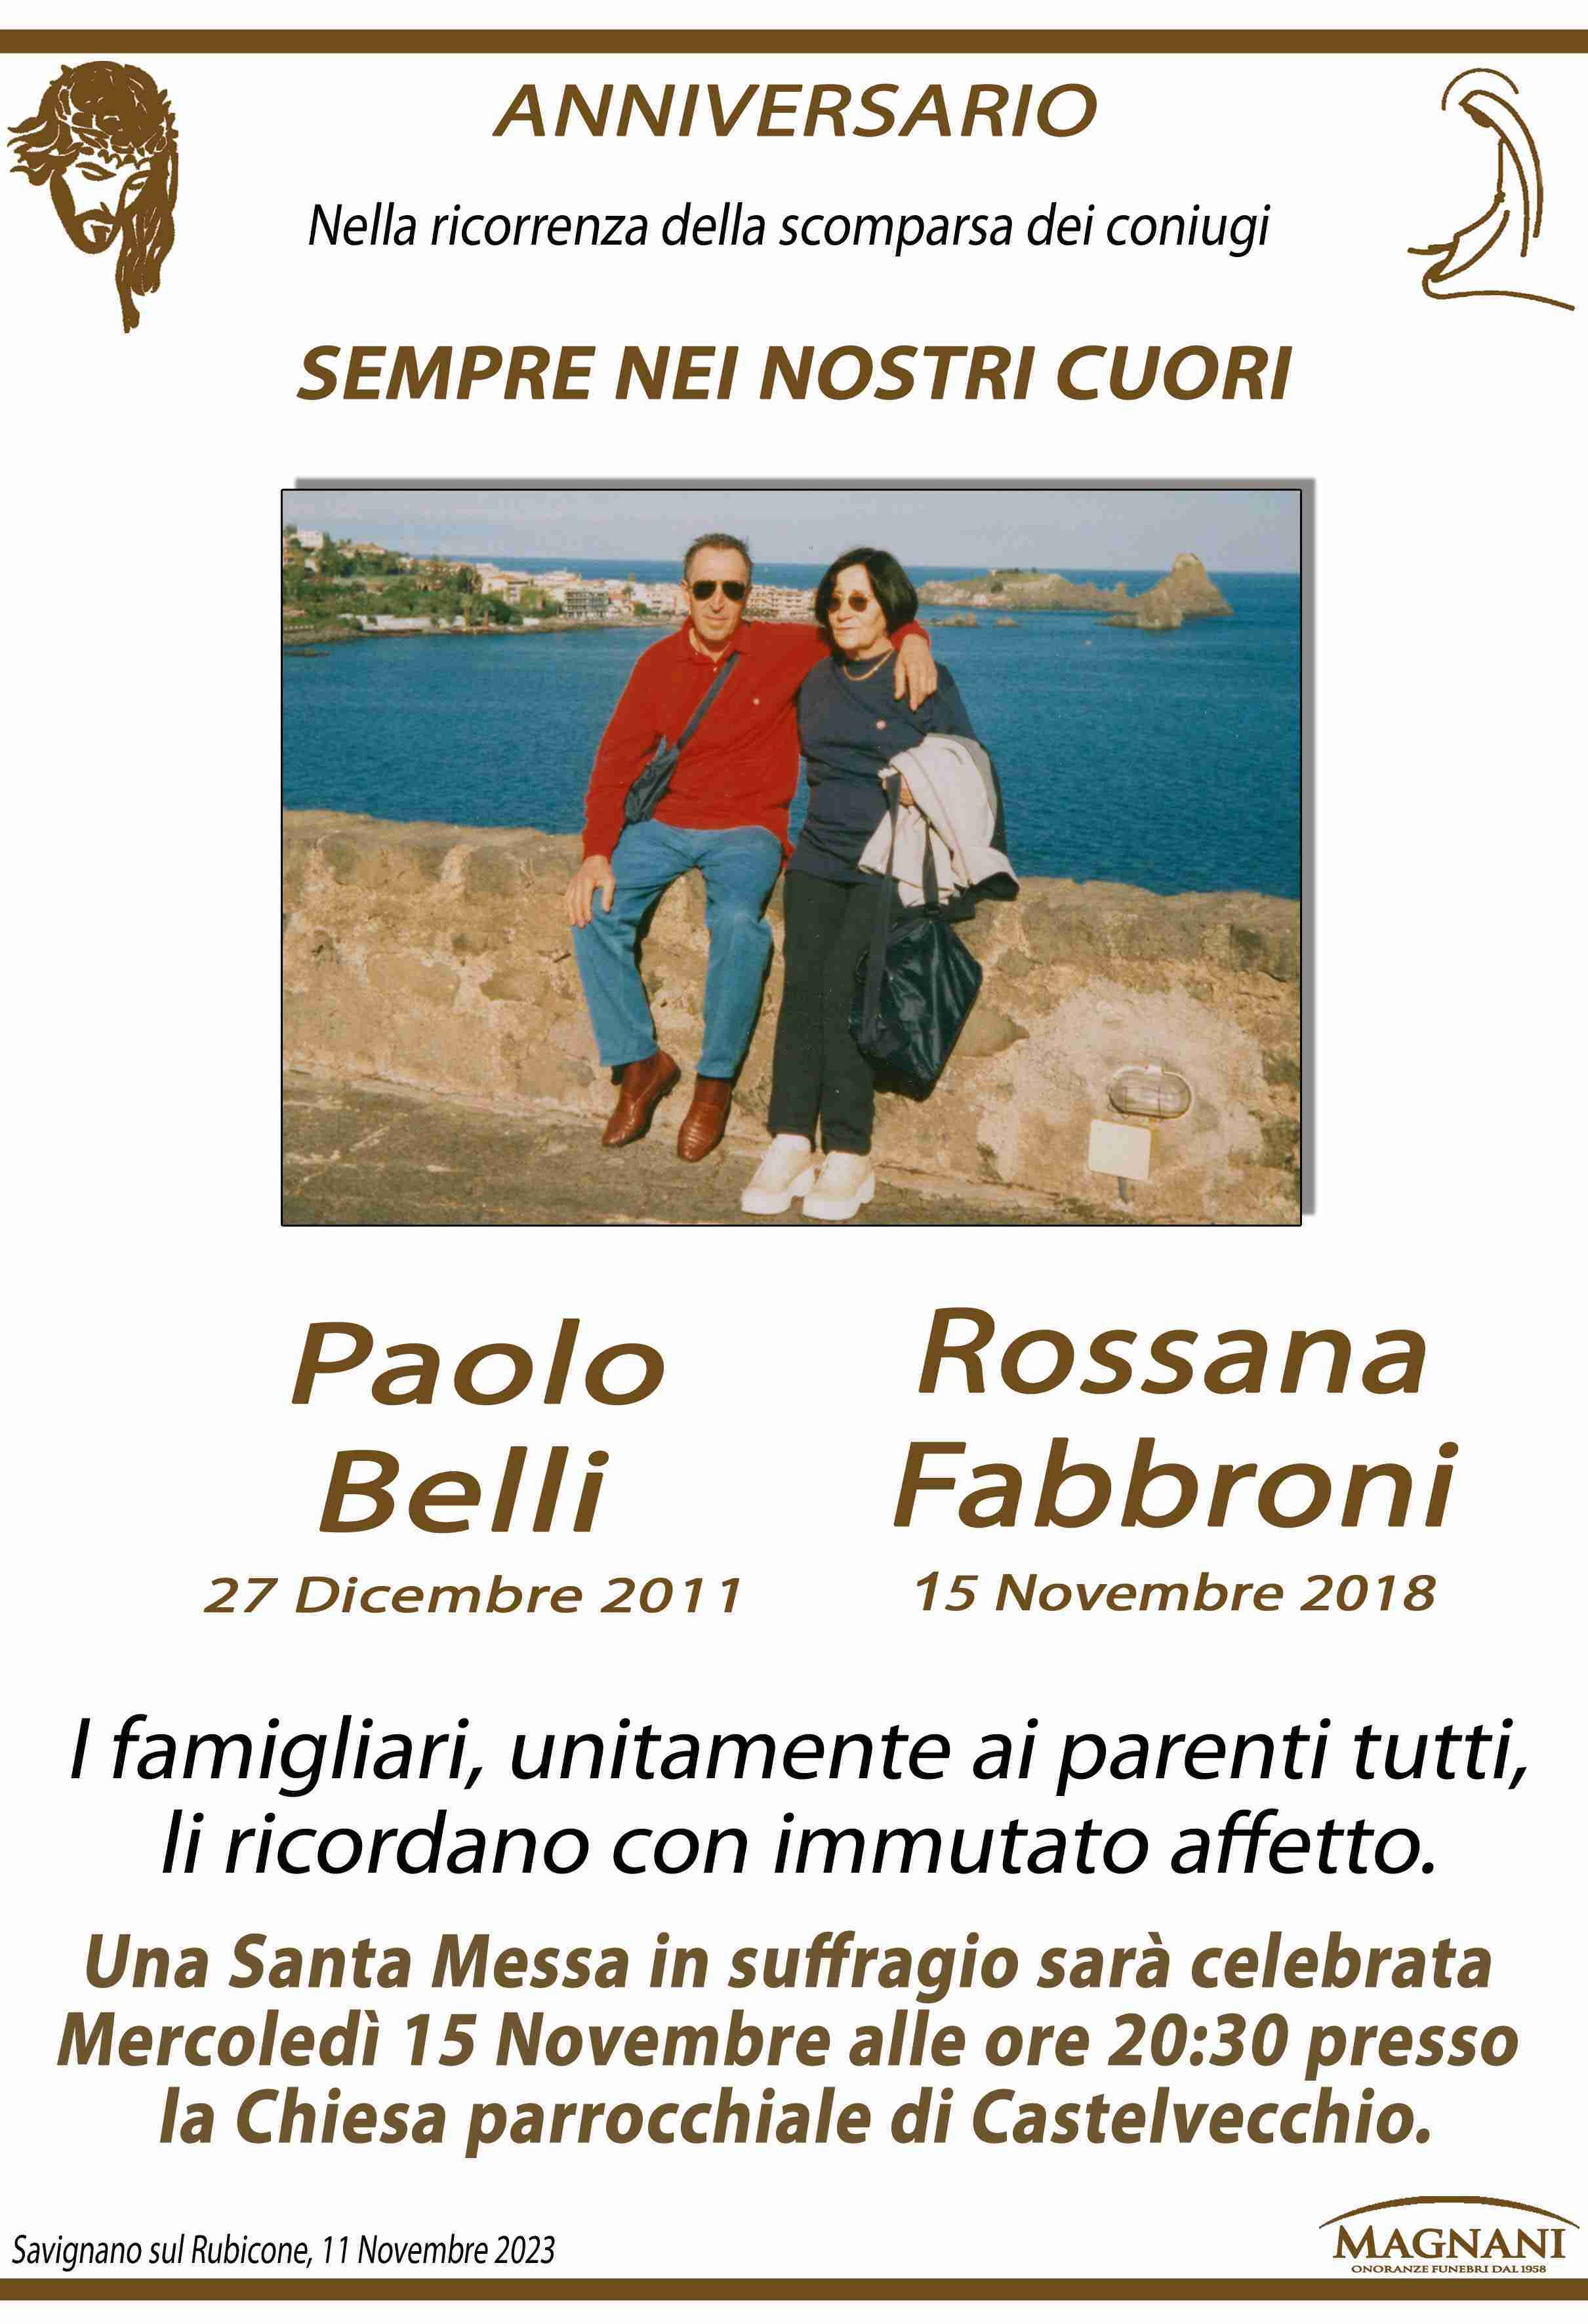 Paolo Belli e Rossana Fabbroni